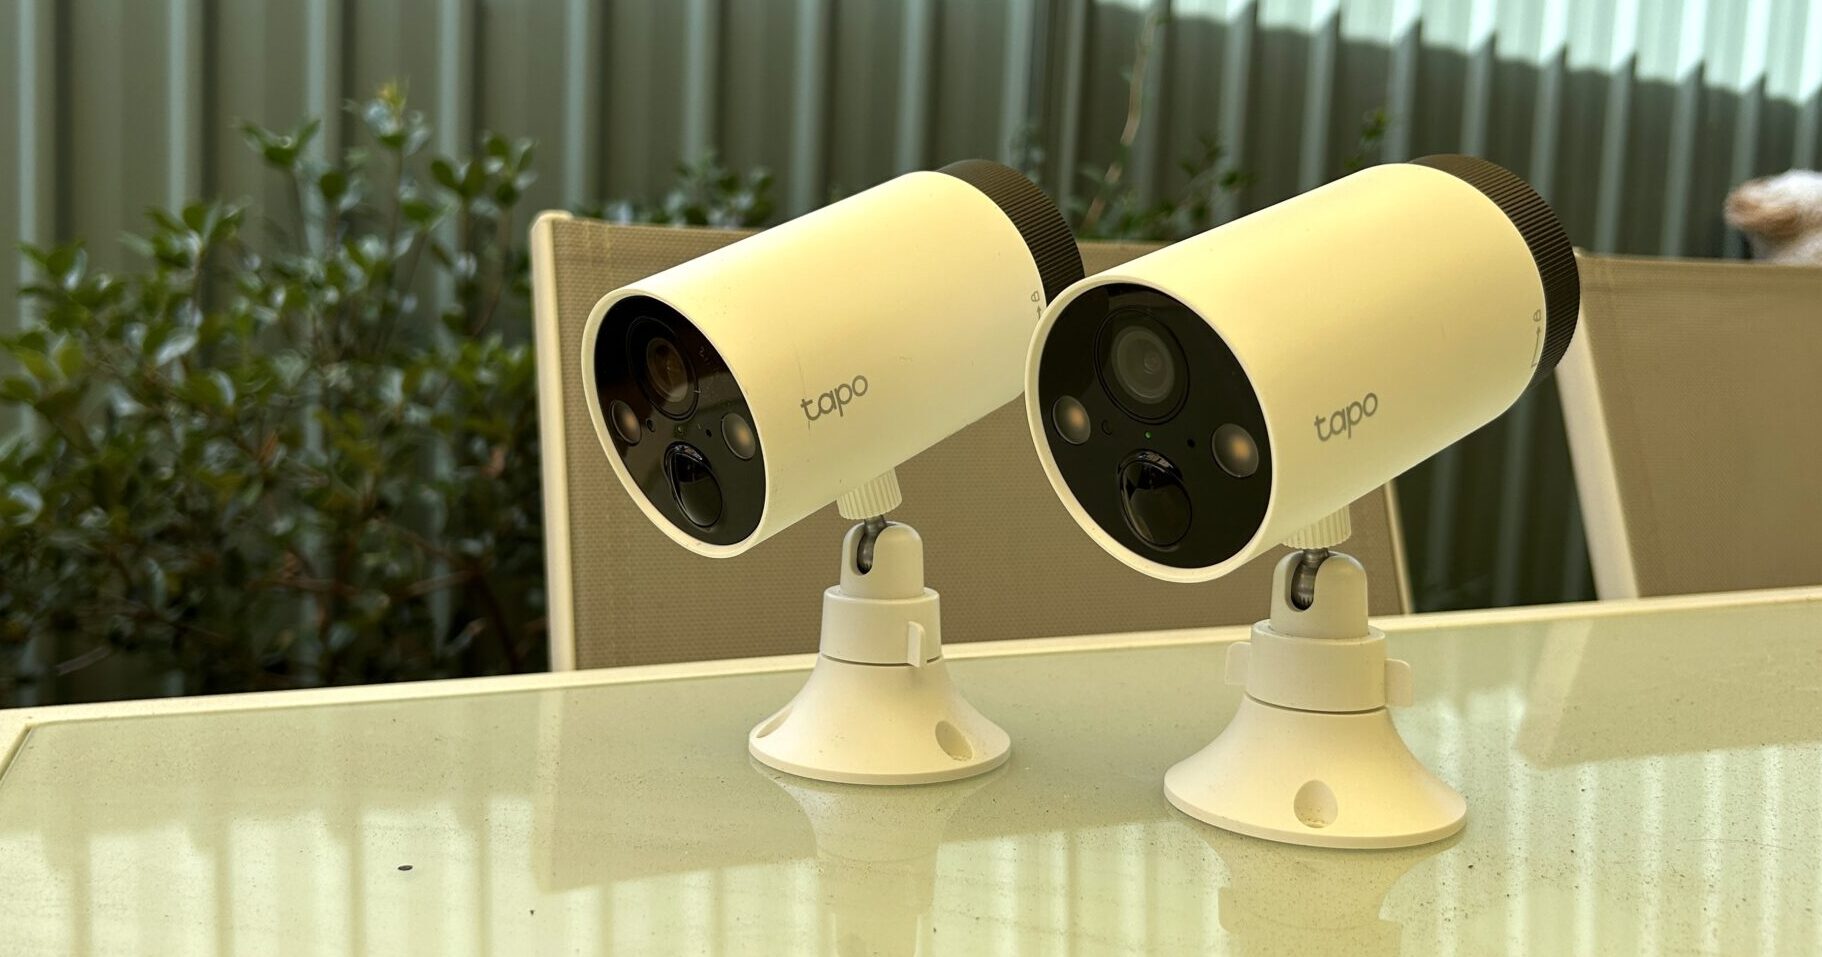 Test des TP-Link Tapo C420 : notre avis complet sur ces caméras